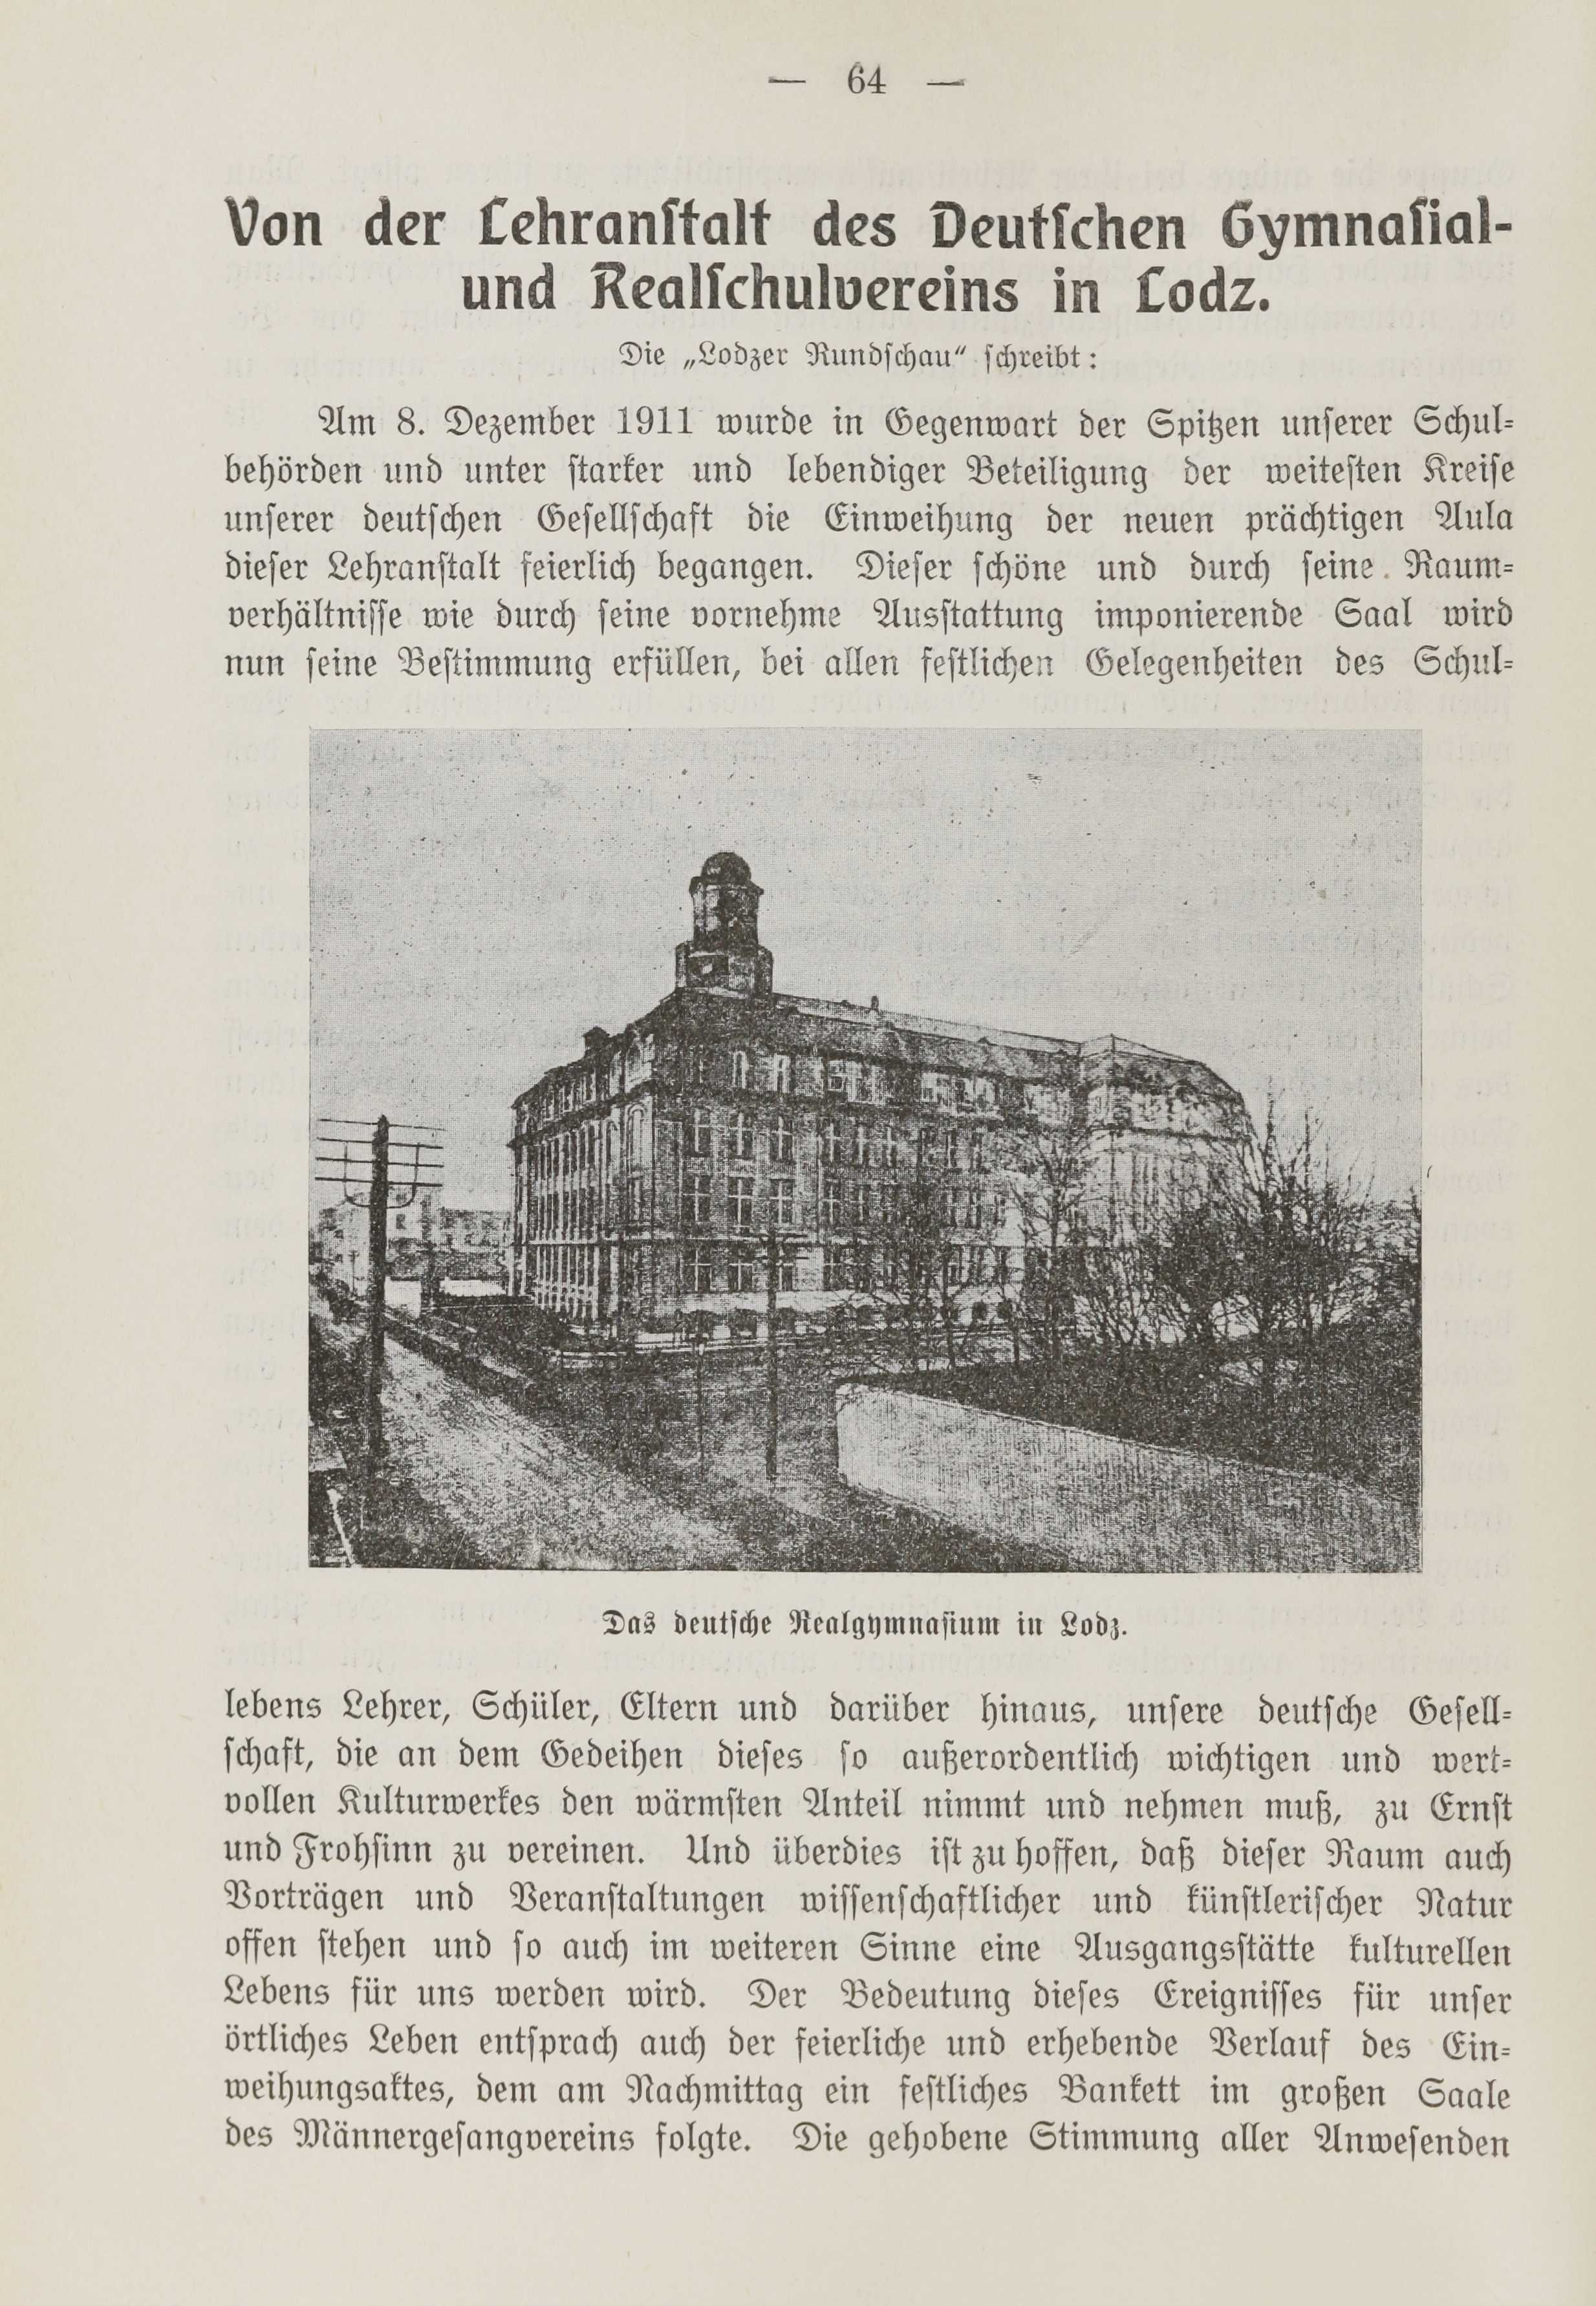 Deutsche Monatsschrift für Russland [1] (1912) | 71. (64) Haupttext